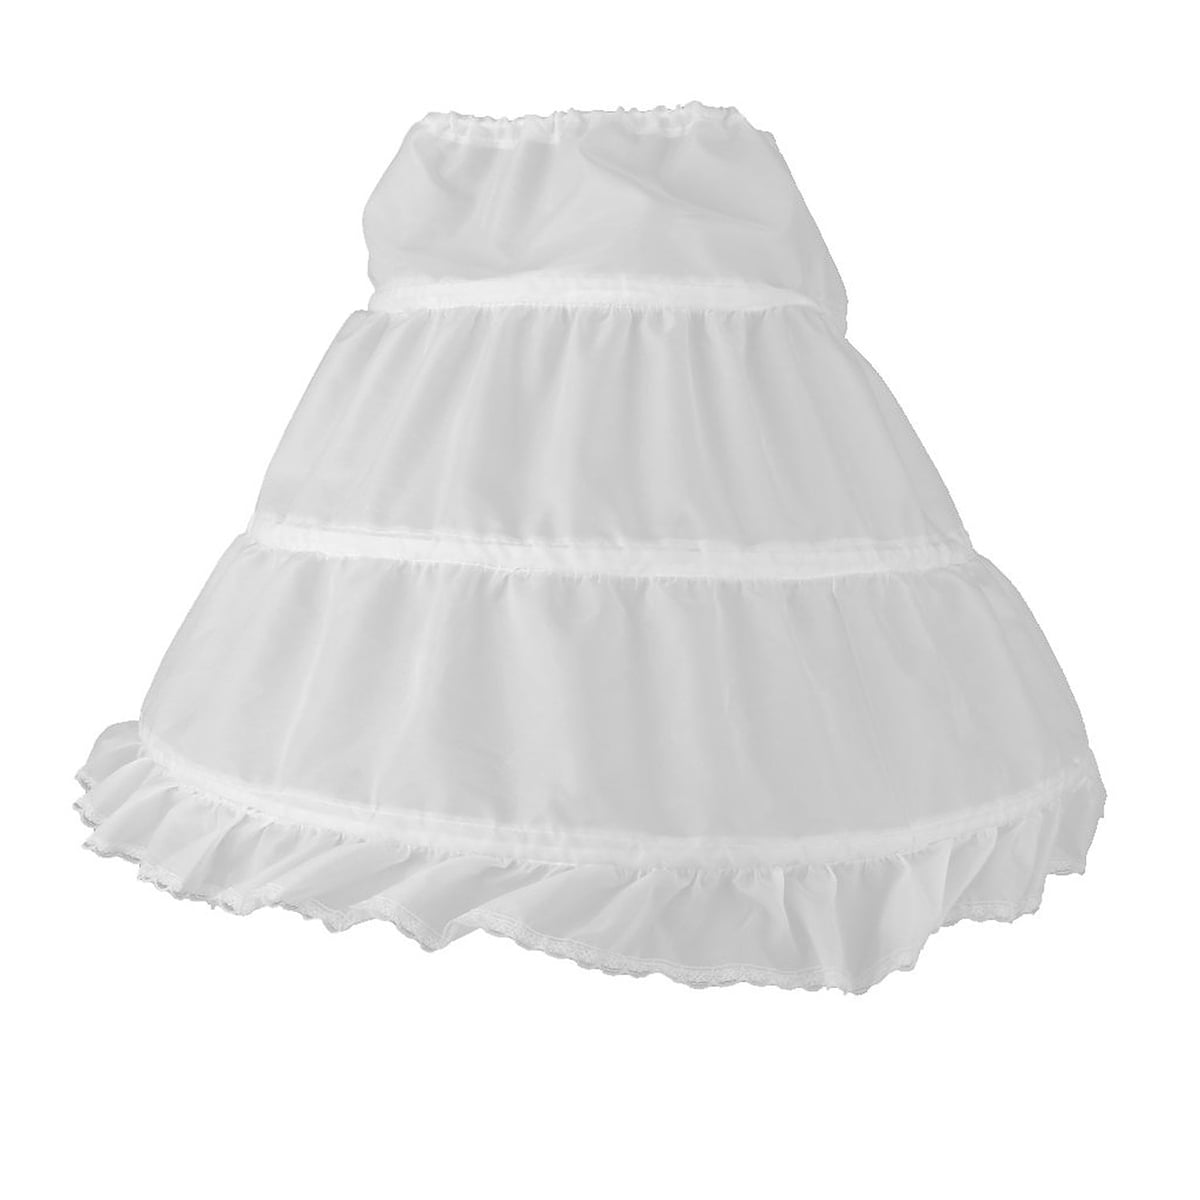 Petticoat Tutu Crinoline Underskirt Slips 3 Layers for Flower Girl Wedding Dress 